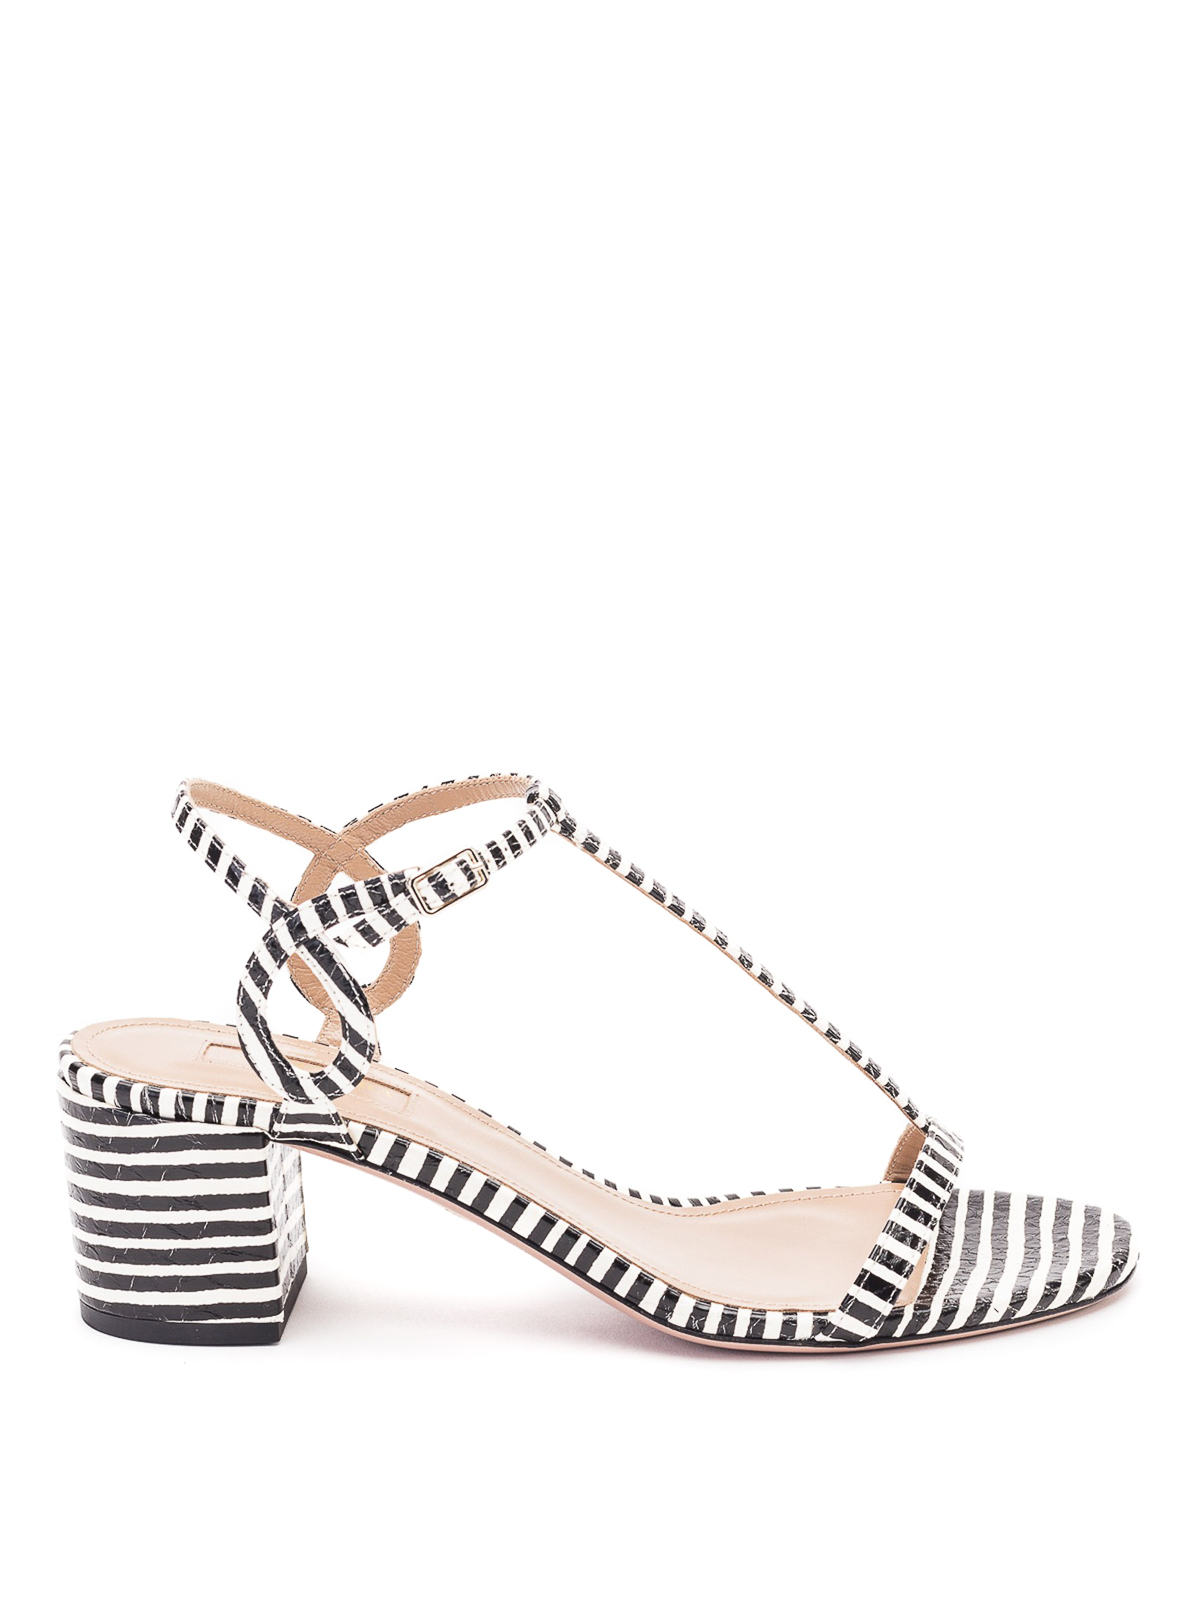 Aquazzura Black And White Striped Heeled Sandals In Multicolour | ModeSens